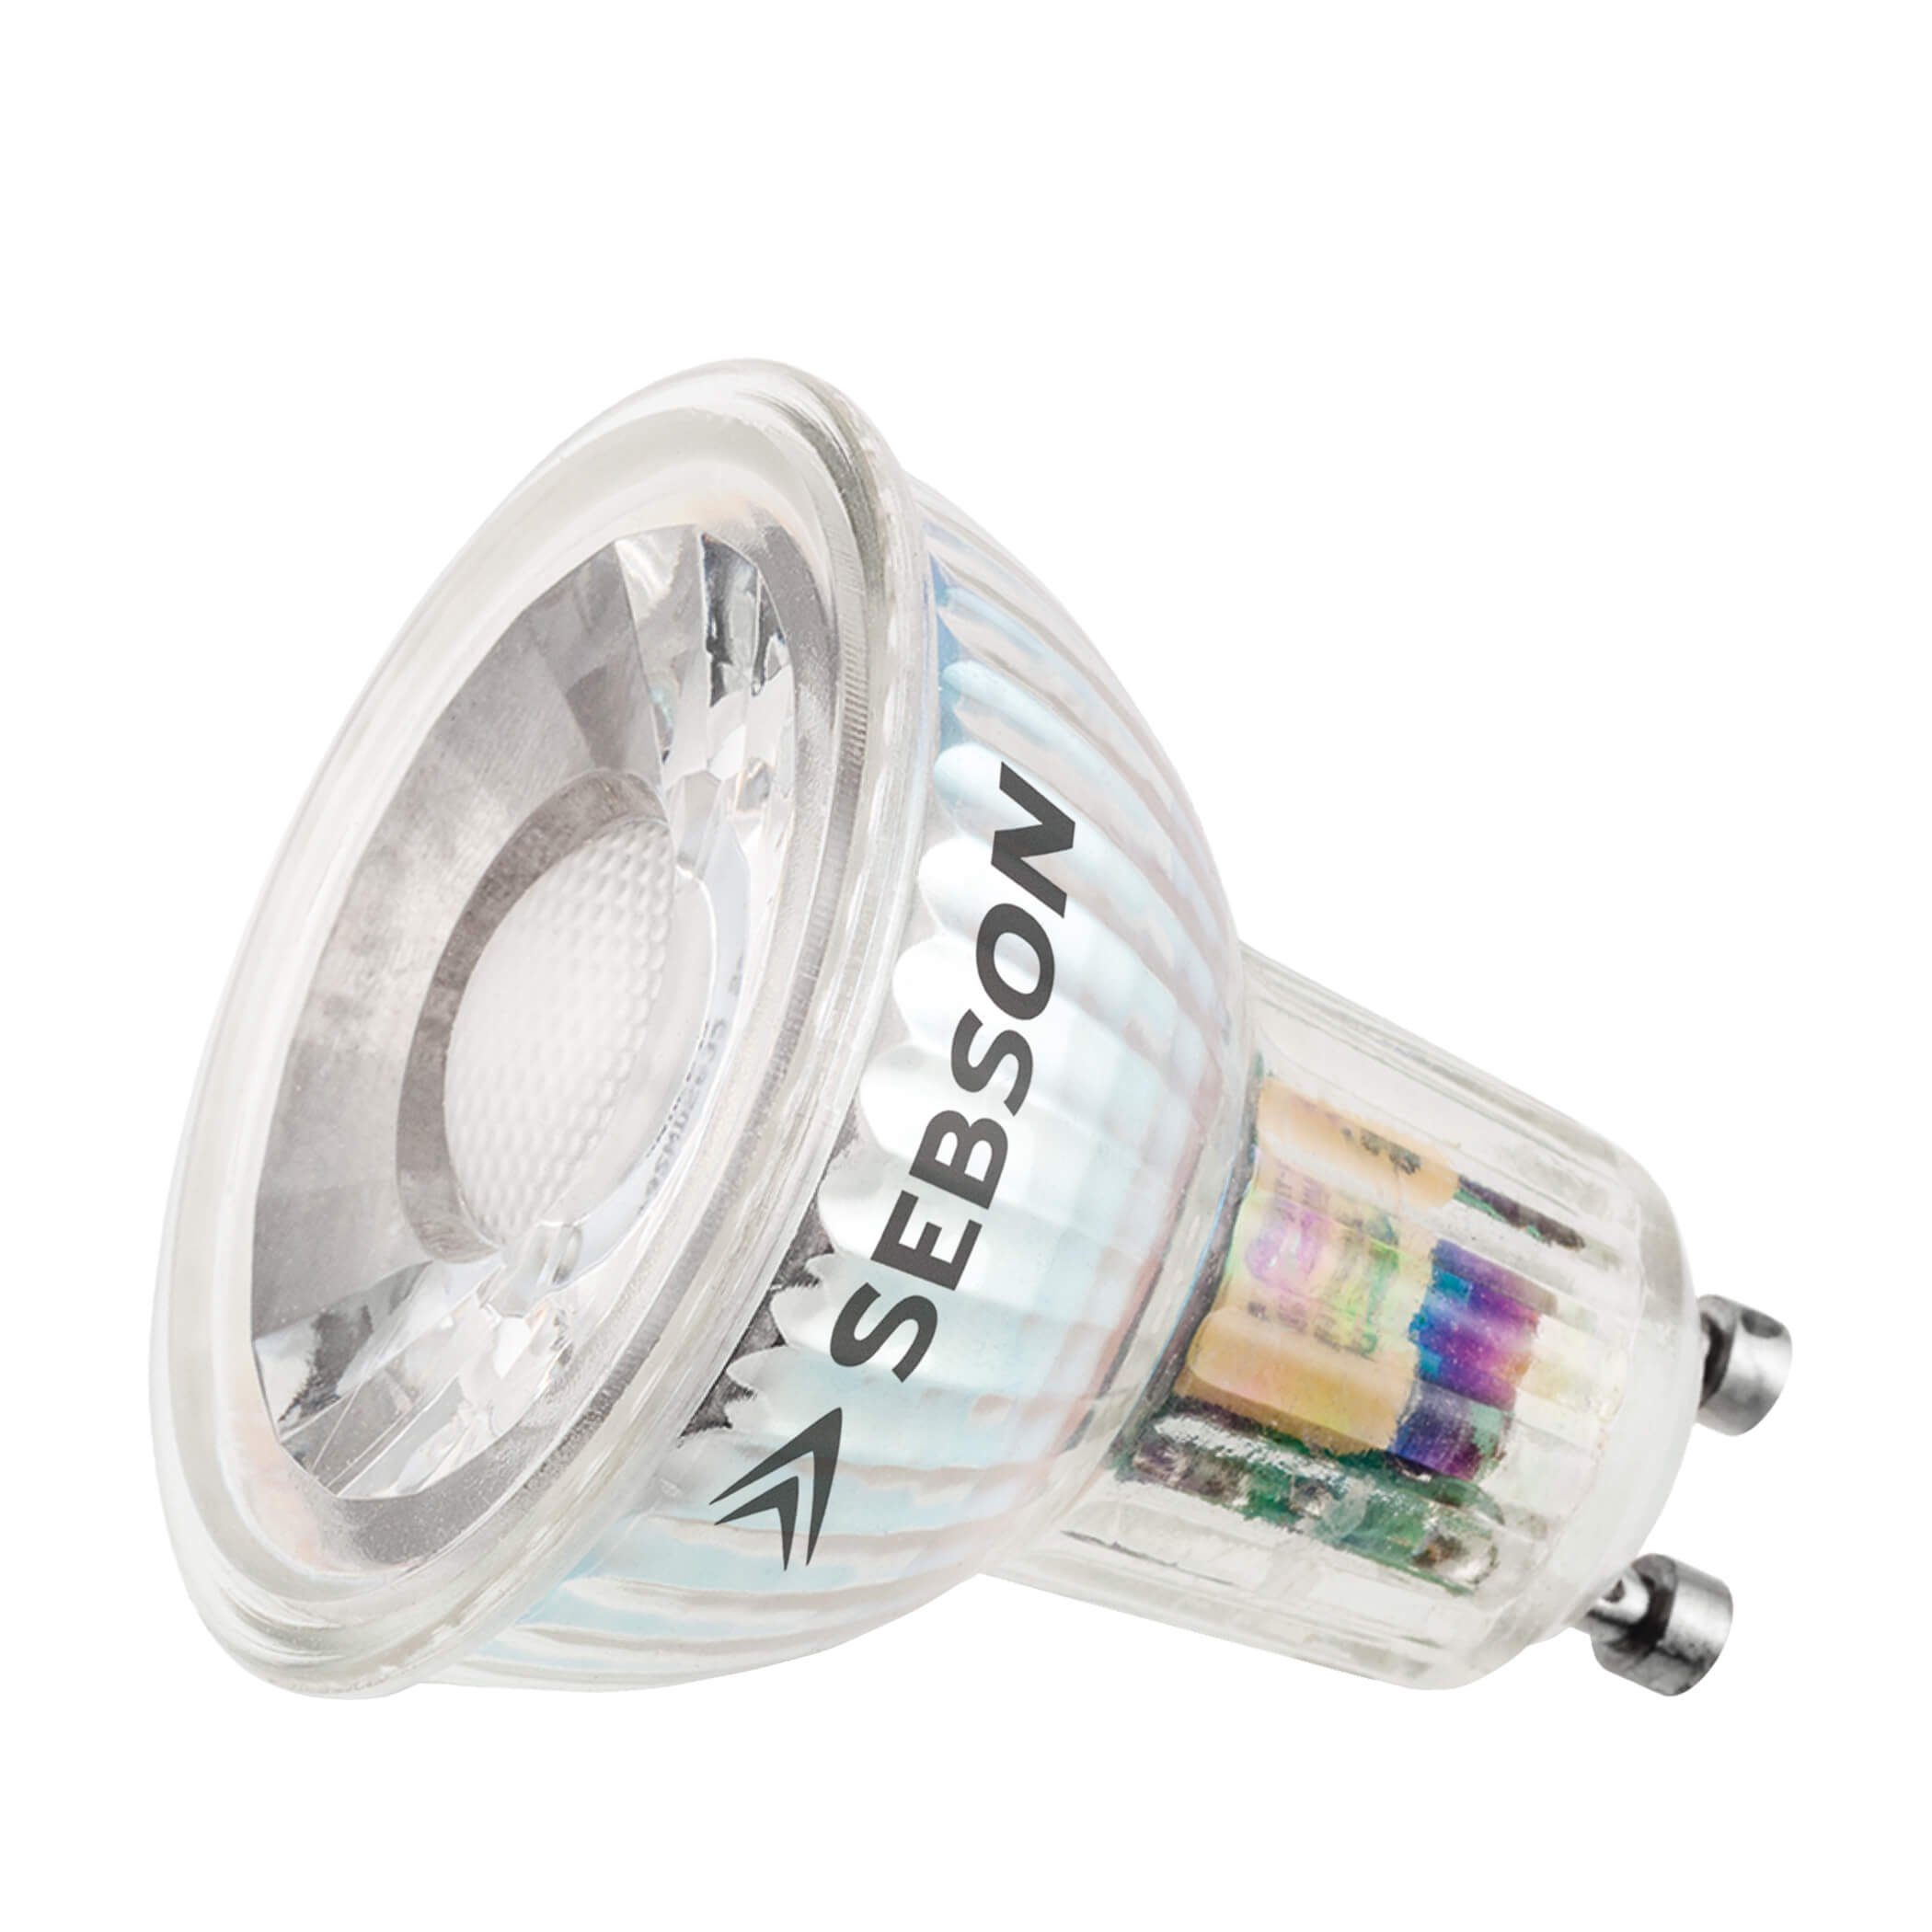 SEBSON LED-Leuchtmittel GU10 LED Lampe 5W warmweiß 380lm 3000K 230V Leuchtmittel ø50x54mm